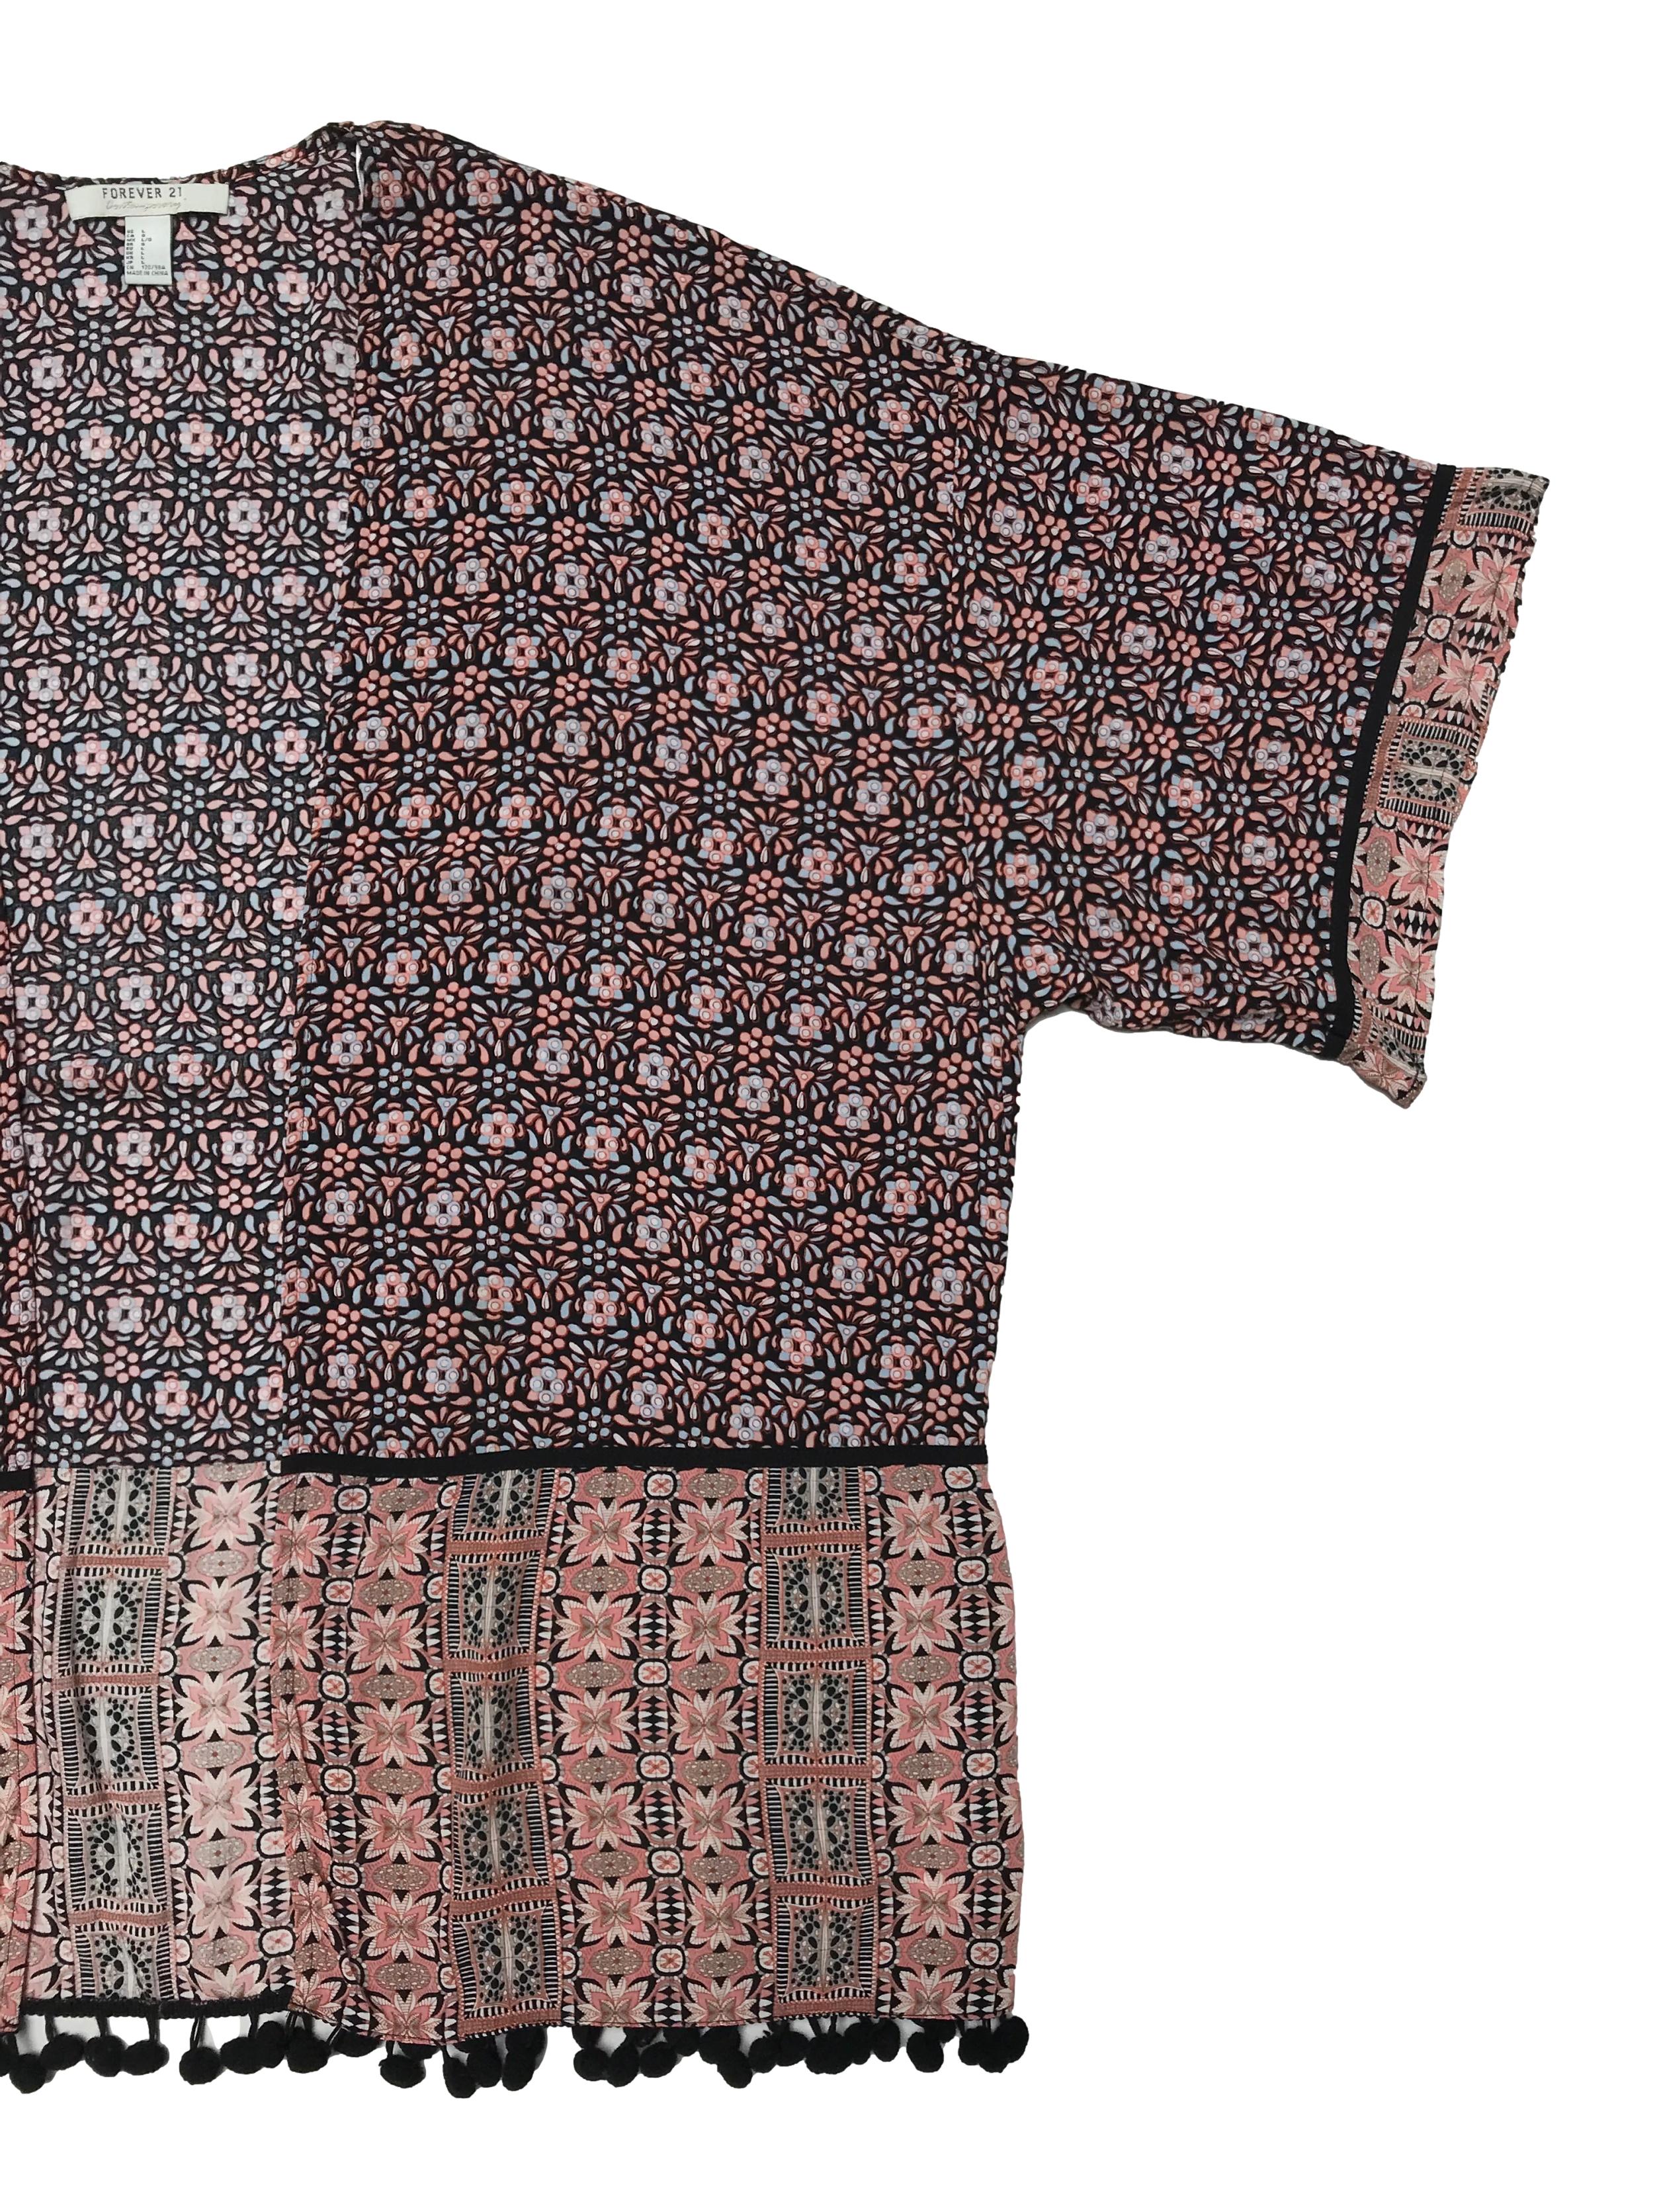 Capa kimono Forever21, 100% rayón tela fresca, estampado boho, modelo abierto, con borlas en la basta. Ancho 135cm Largo 75cm